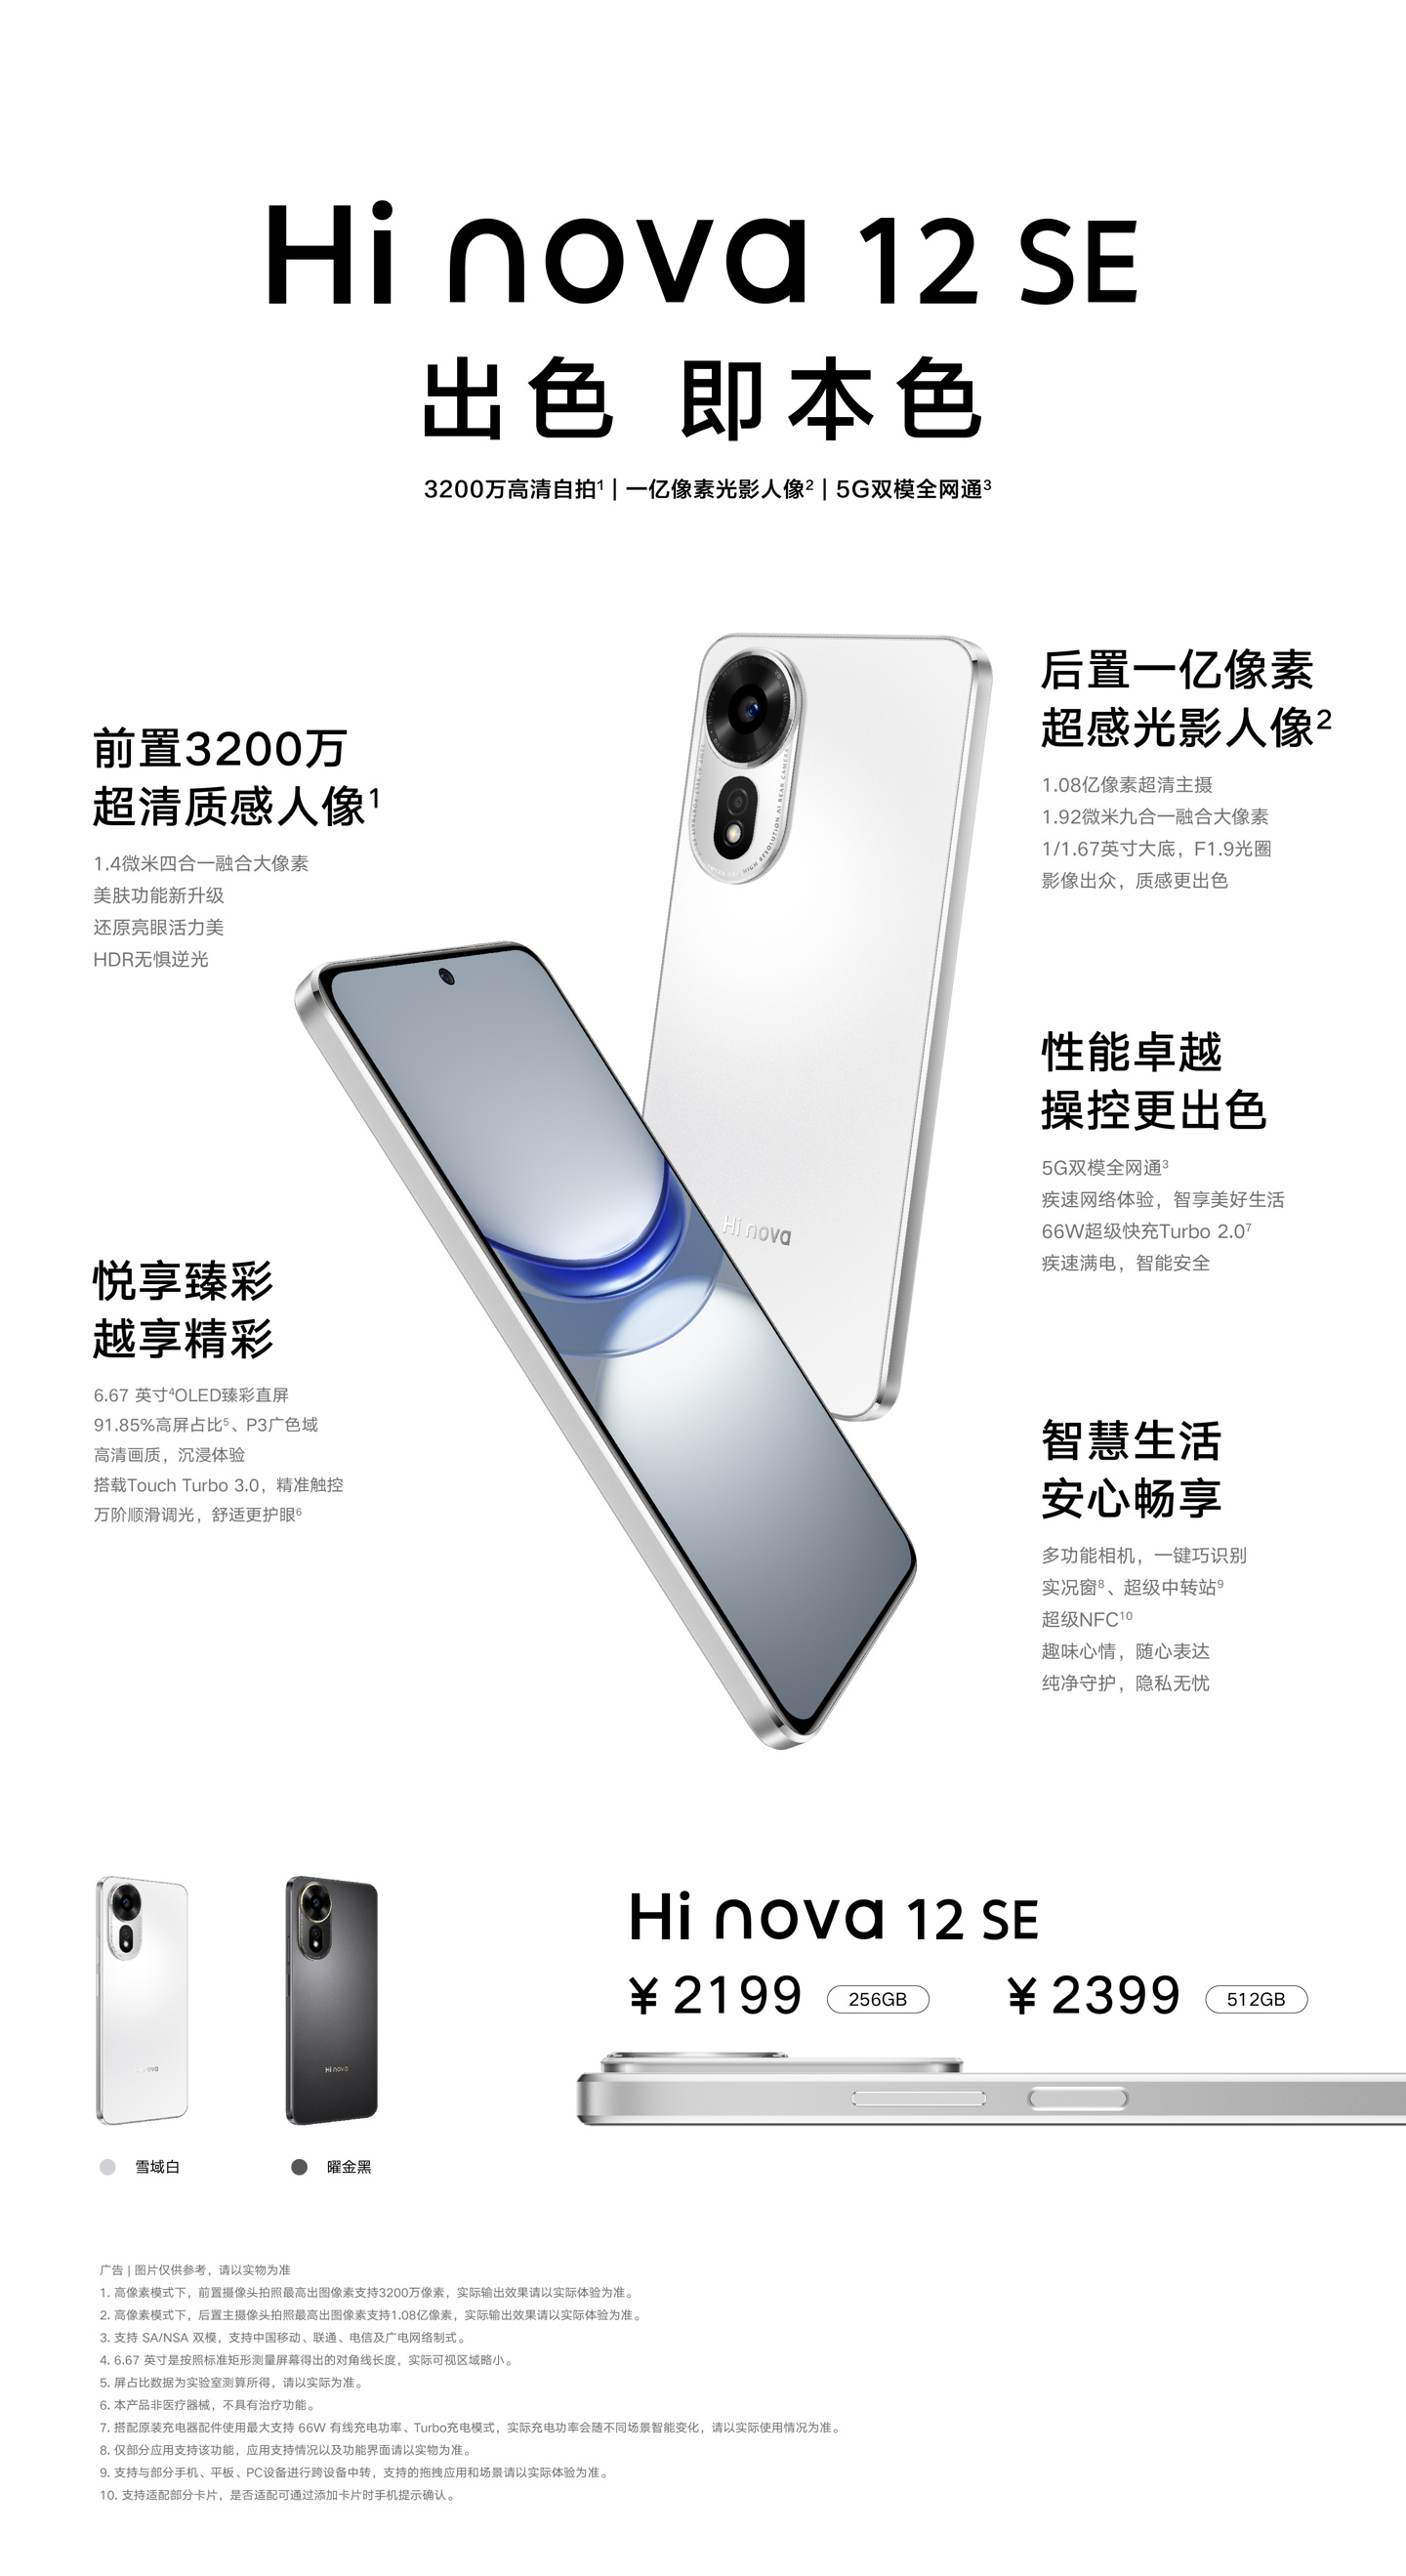 中邮通信 Hi nova 12 SE 手机发布，2199 元起